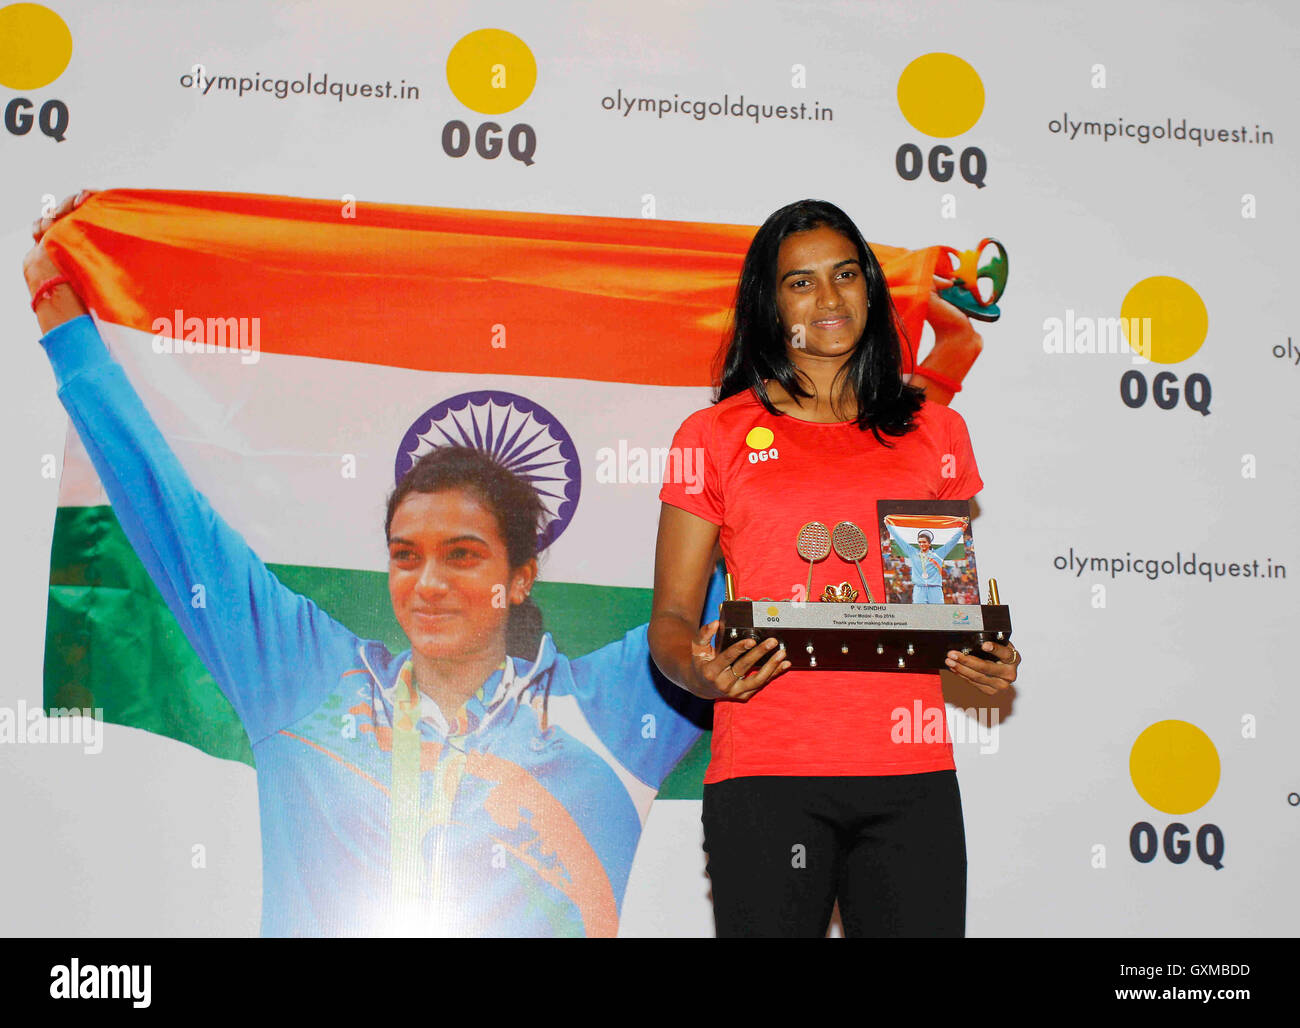 Joueur de badminton aux Jeux olympiques indiens Rio argent medallisat P V Sindhu félicitation d'or aux Jeux Olympiques organisés fonction Quest Mumbai Banque D'Images